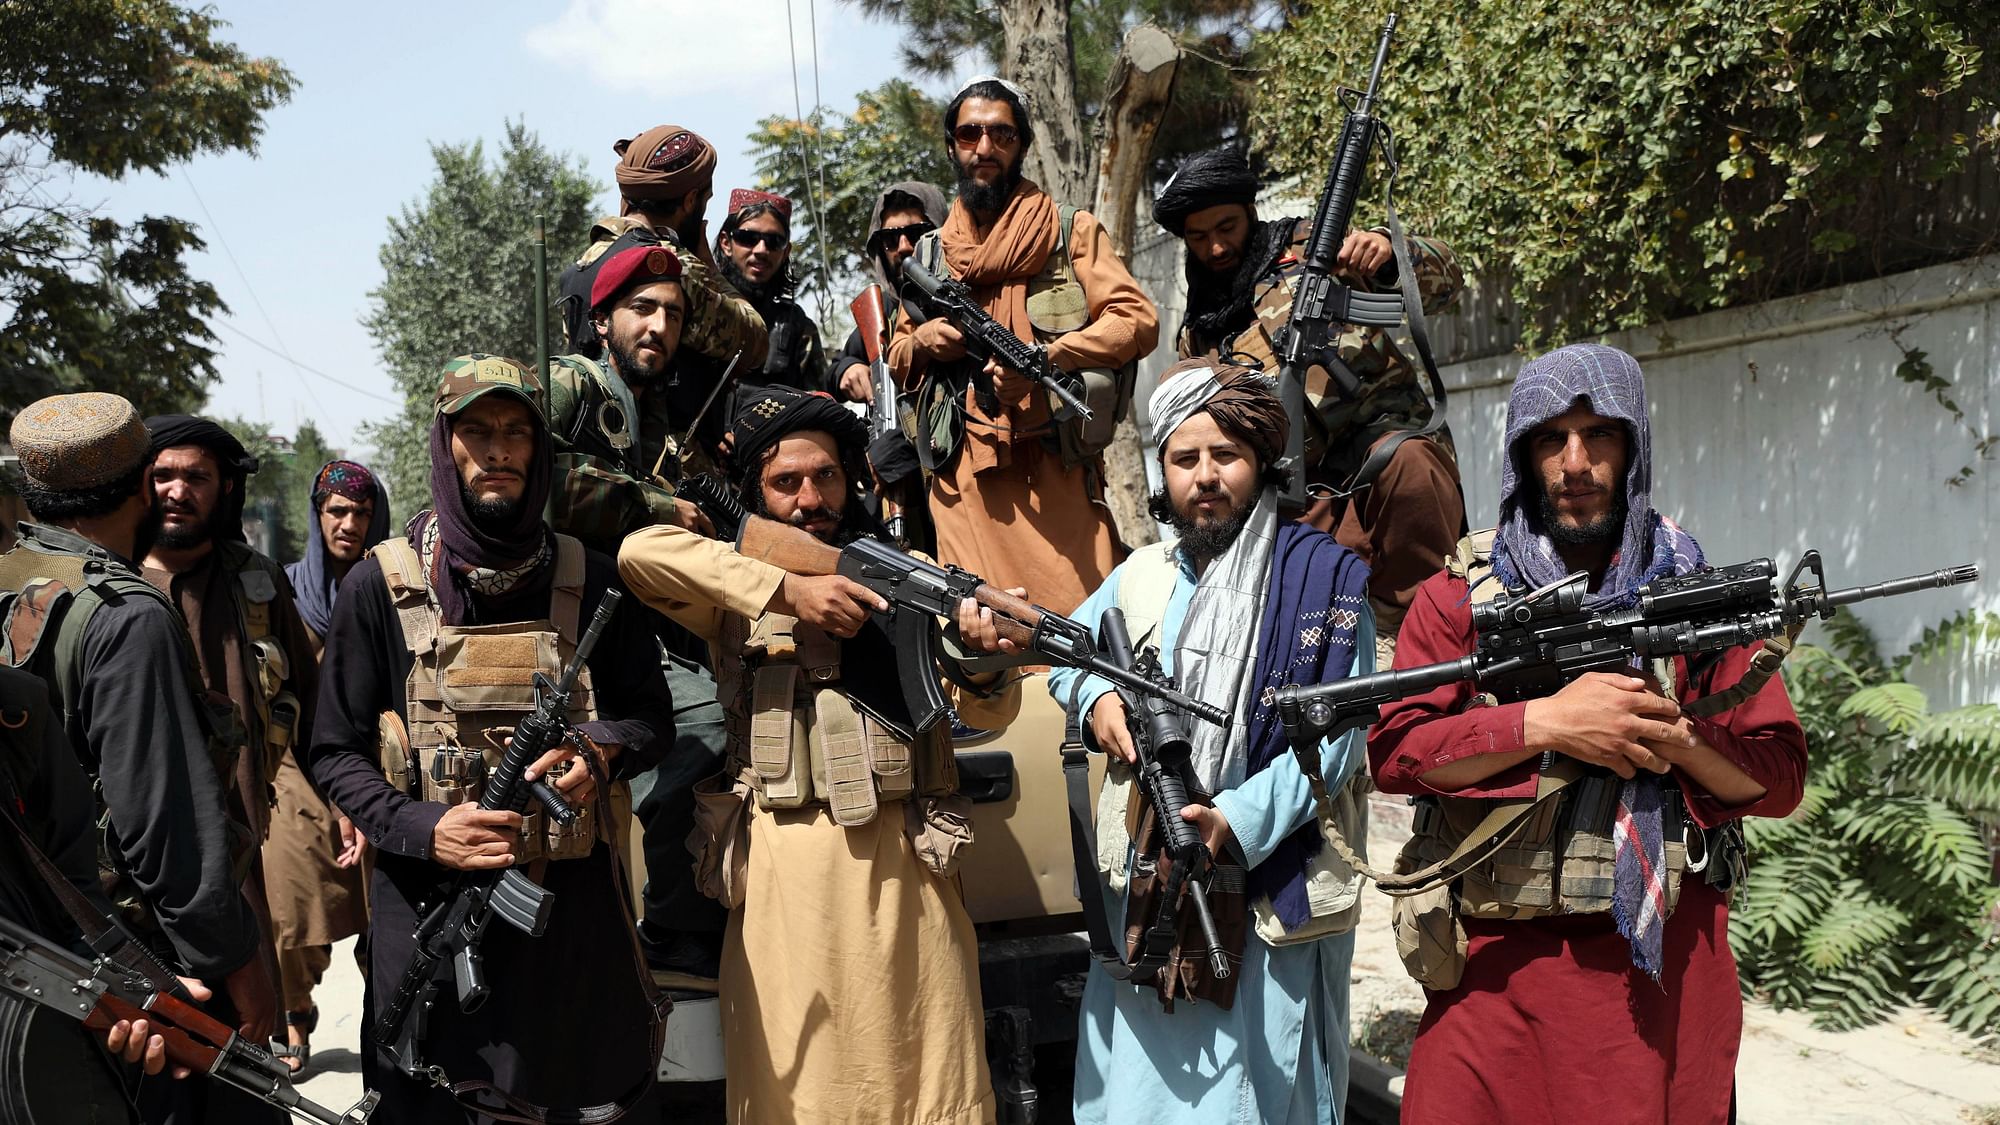 <div class="paragraphs"><p>Taliban के कब्जे से कई अफगानों में नाराजगी: UN मानवाधिकार प्रमुख</p></div>